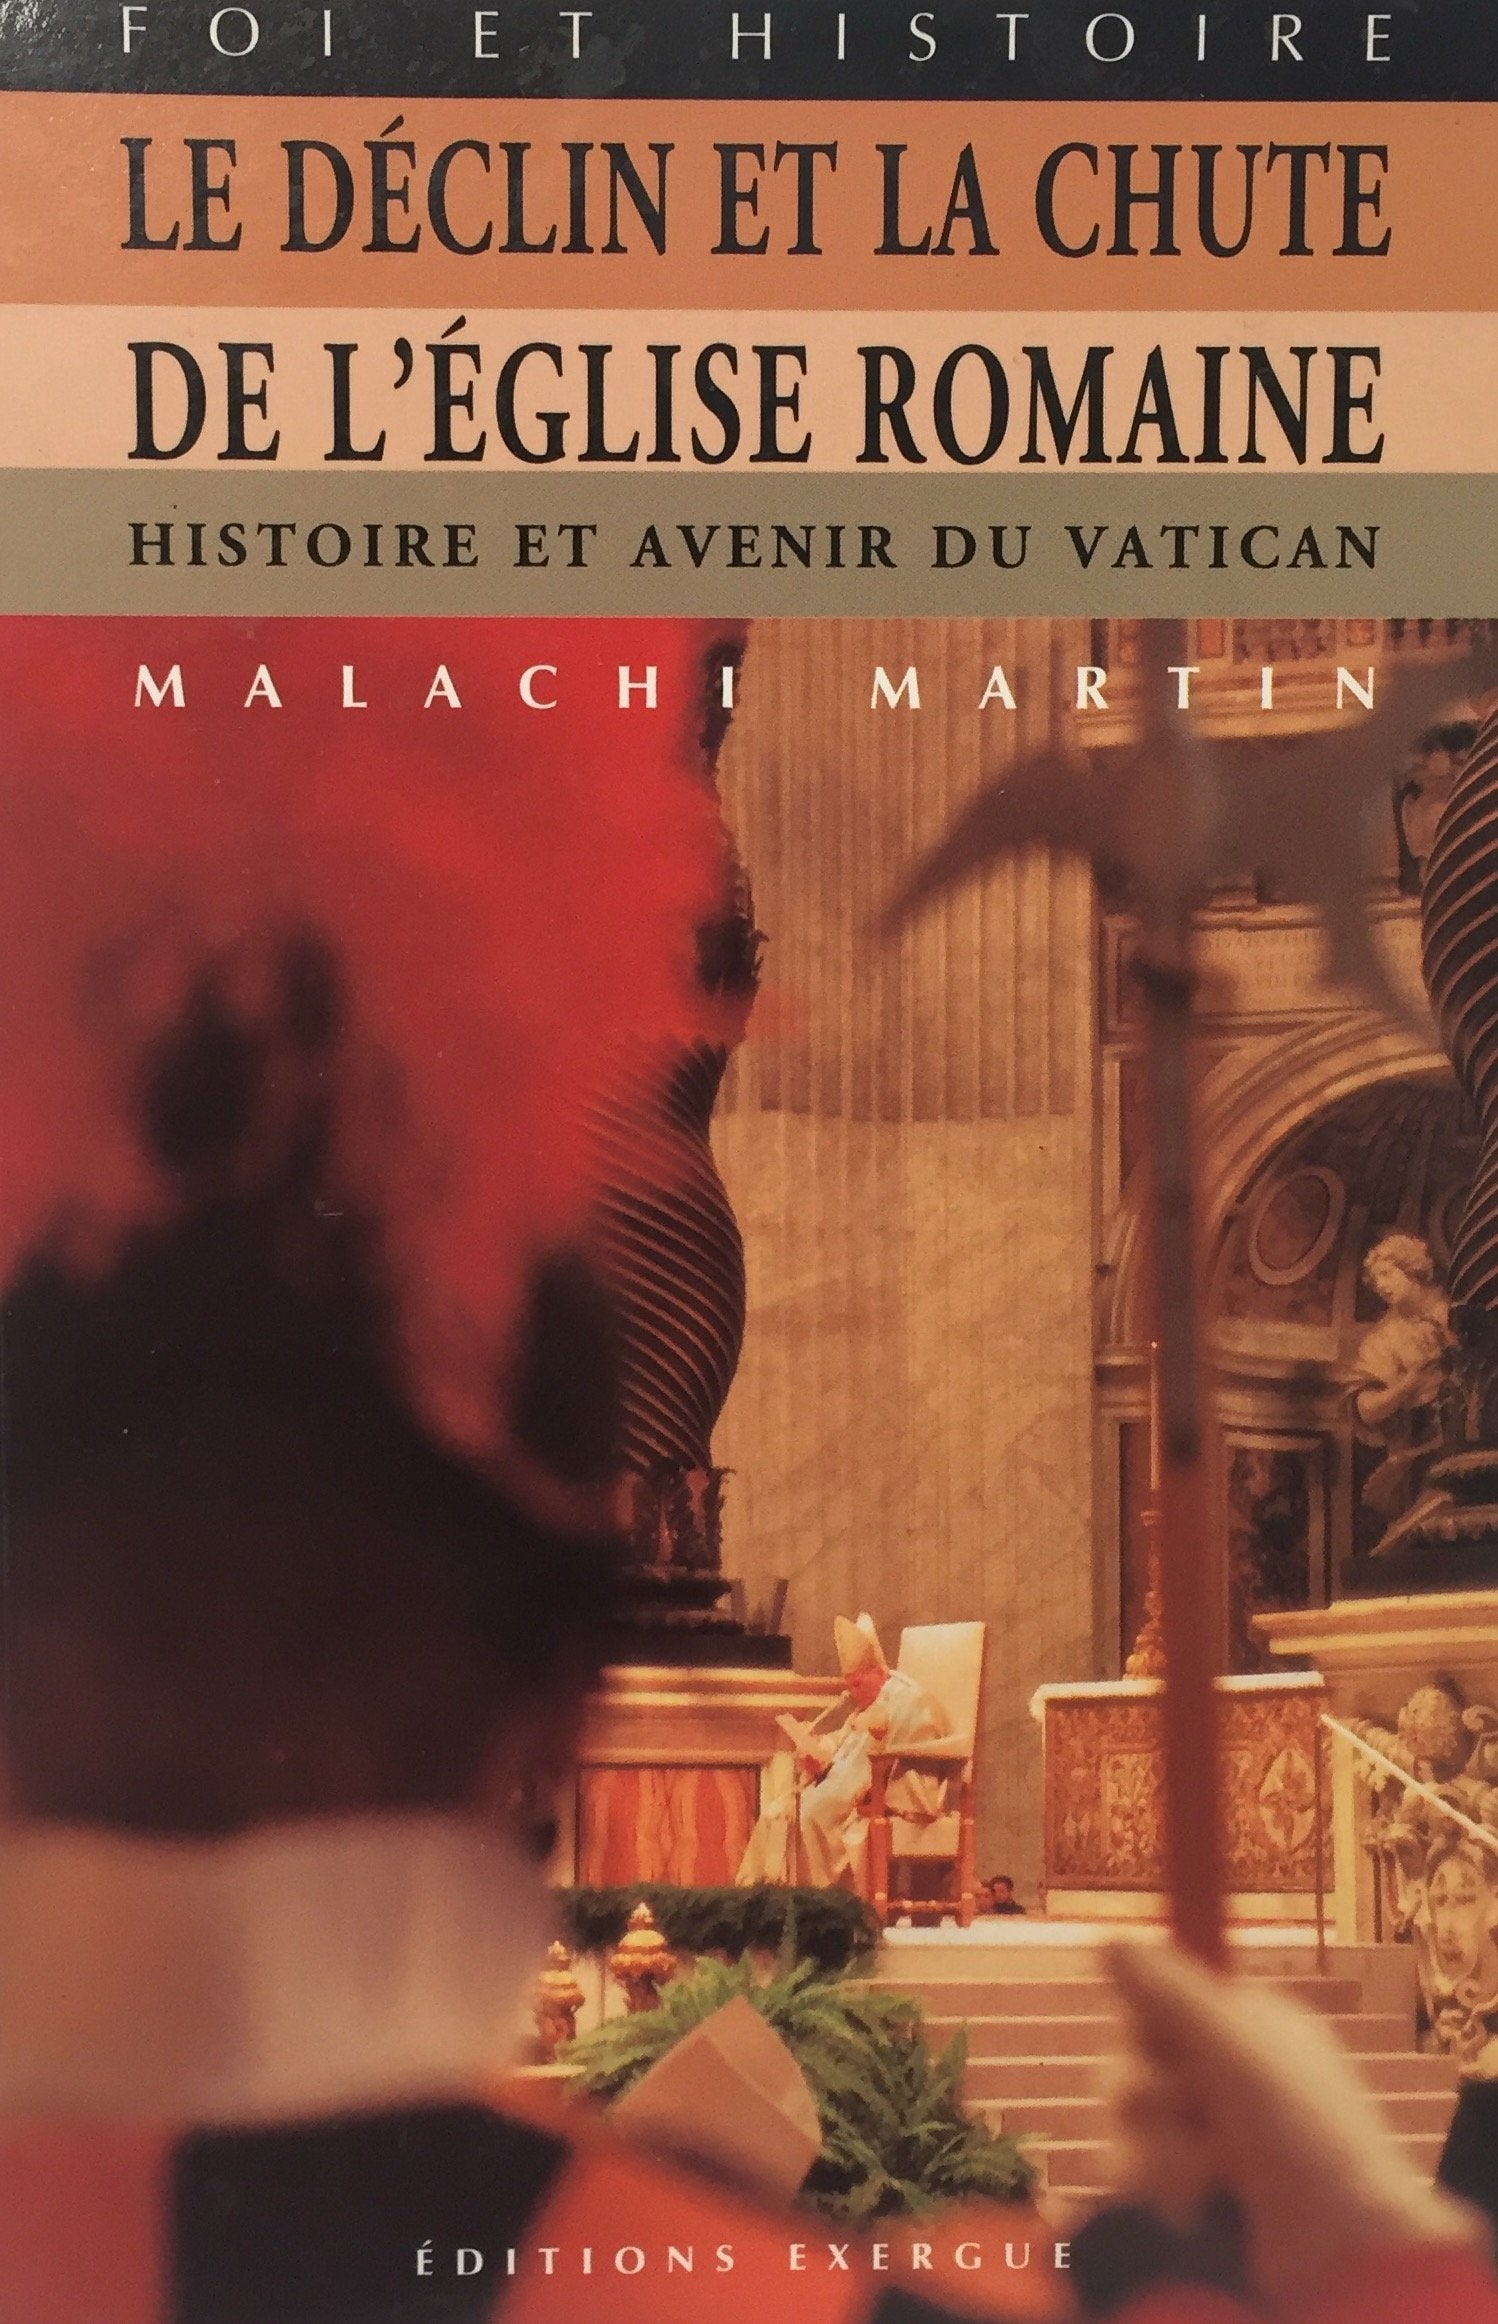 Livre ISBN 2911525116 Le déclin et la chute de l'Eglise romaine (Malachi Martin)